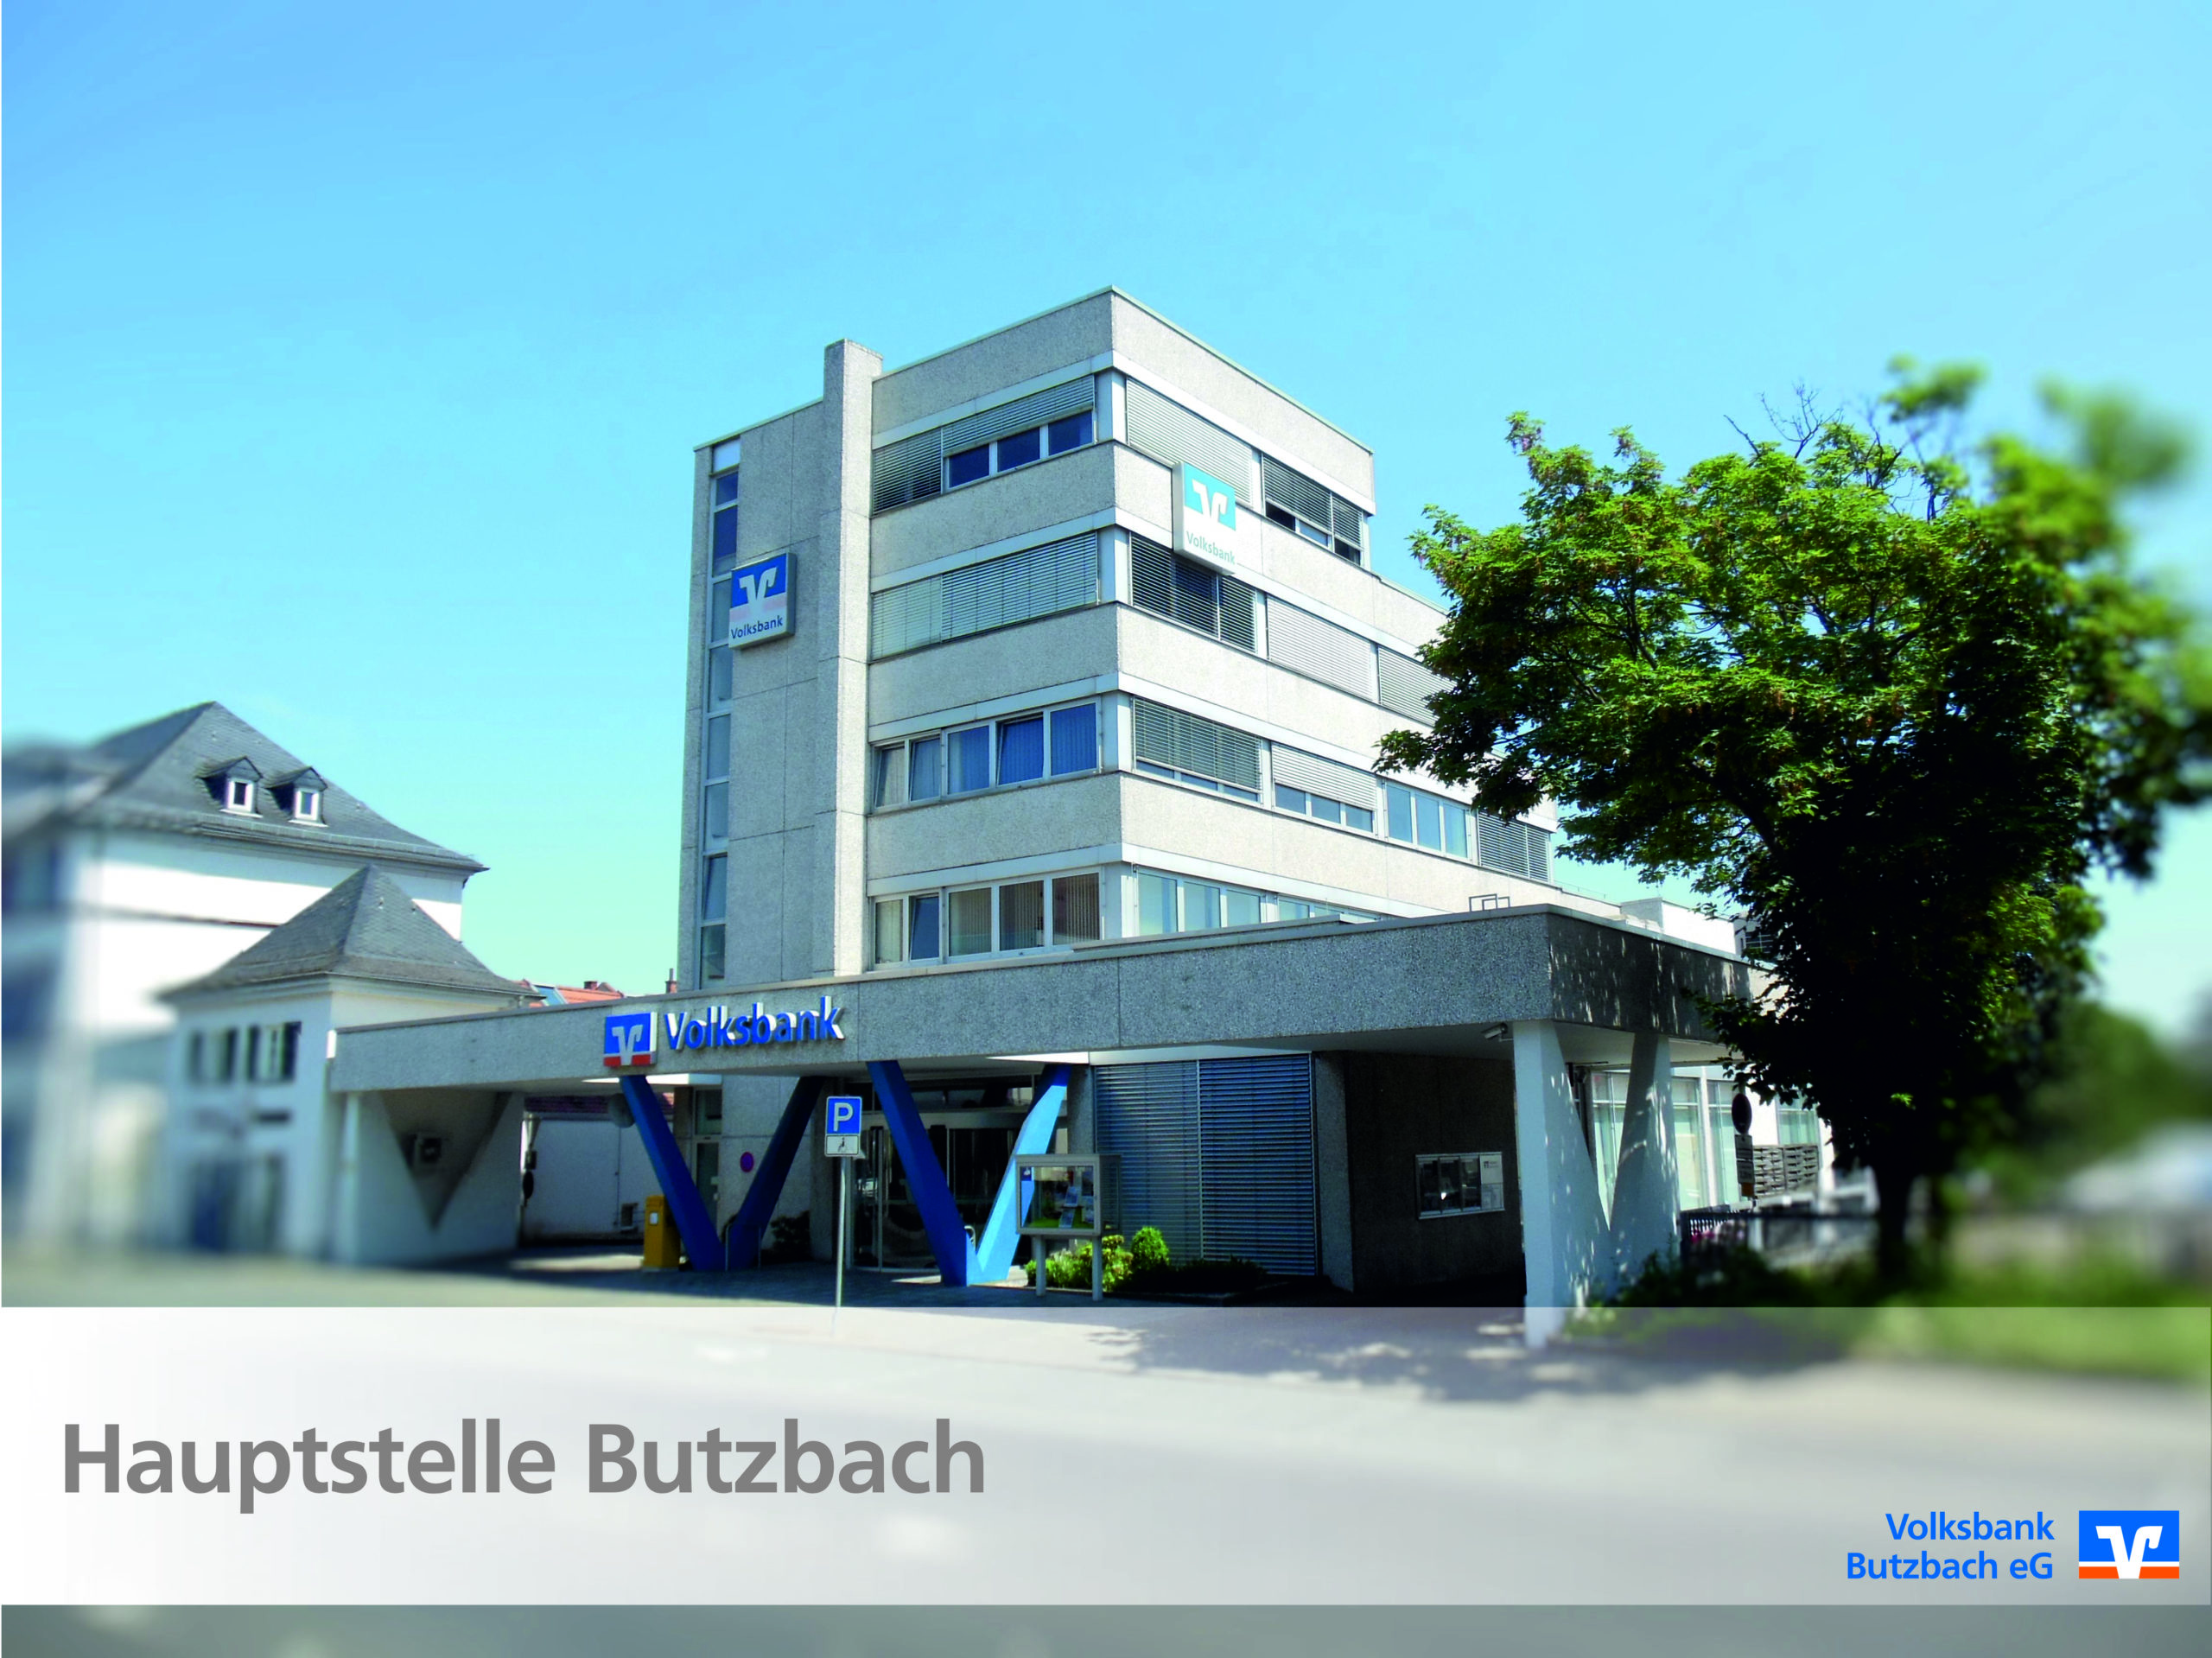 Volksbank Butzbach